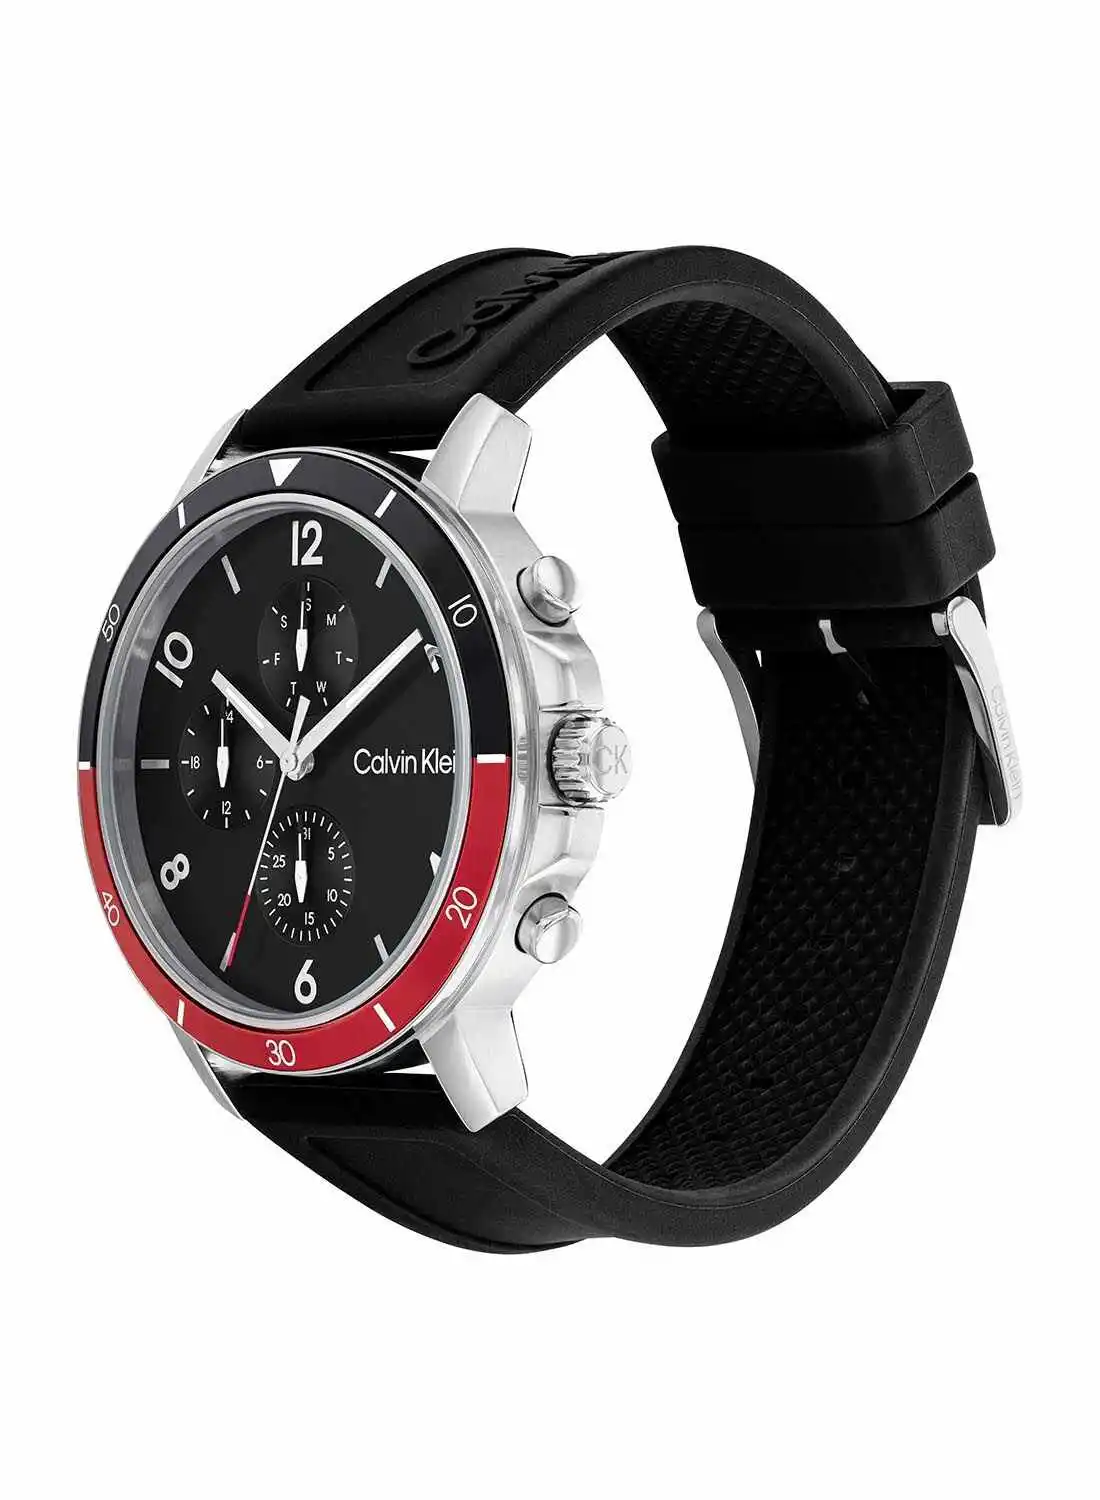 CALVIN KLEIN Analog Round Waterproof  Wrist Watch With Silicone Strap 25200072